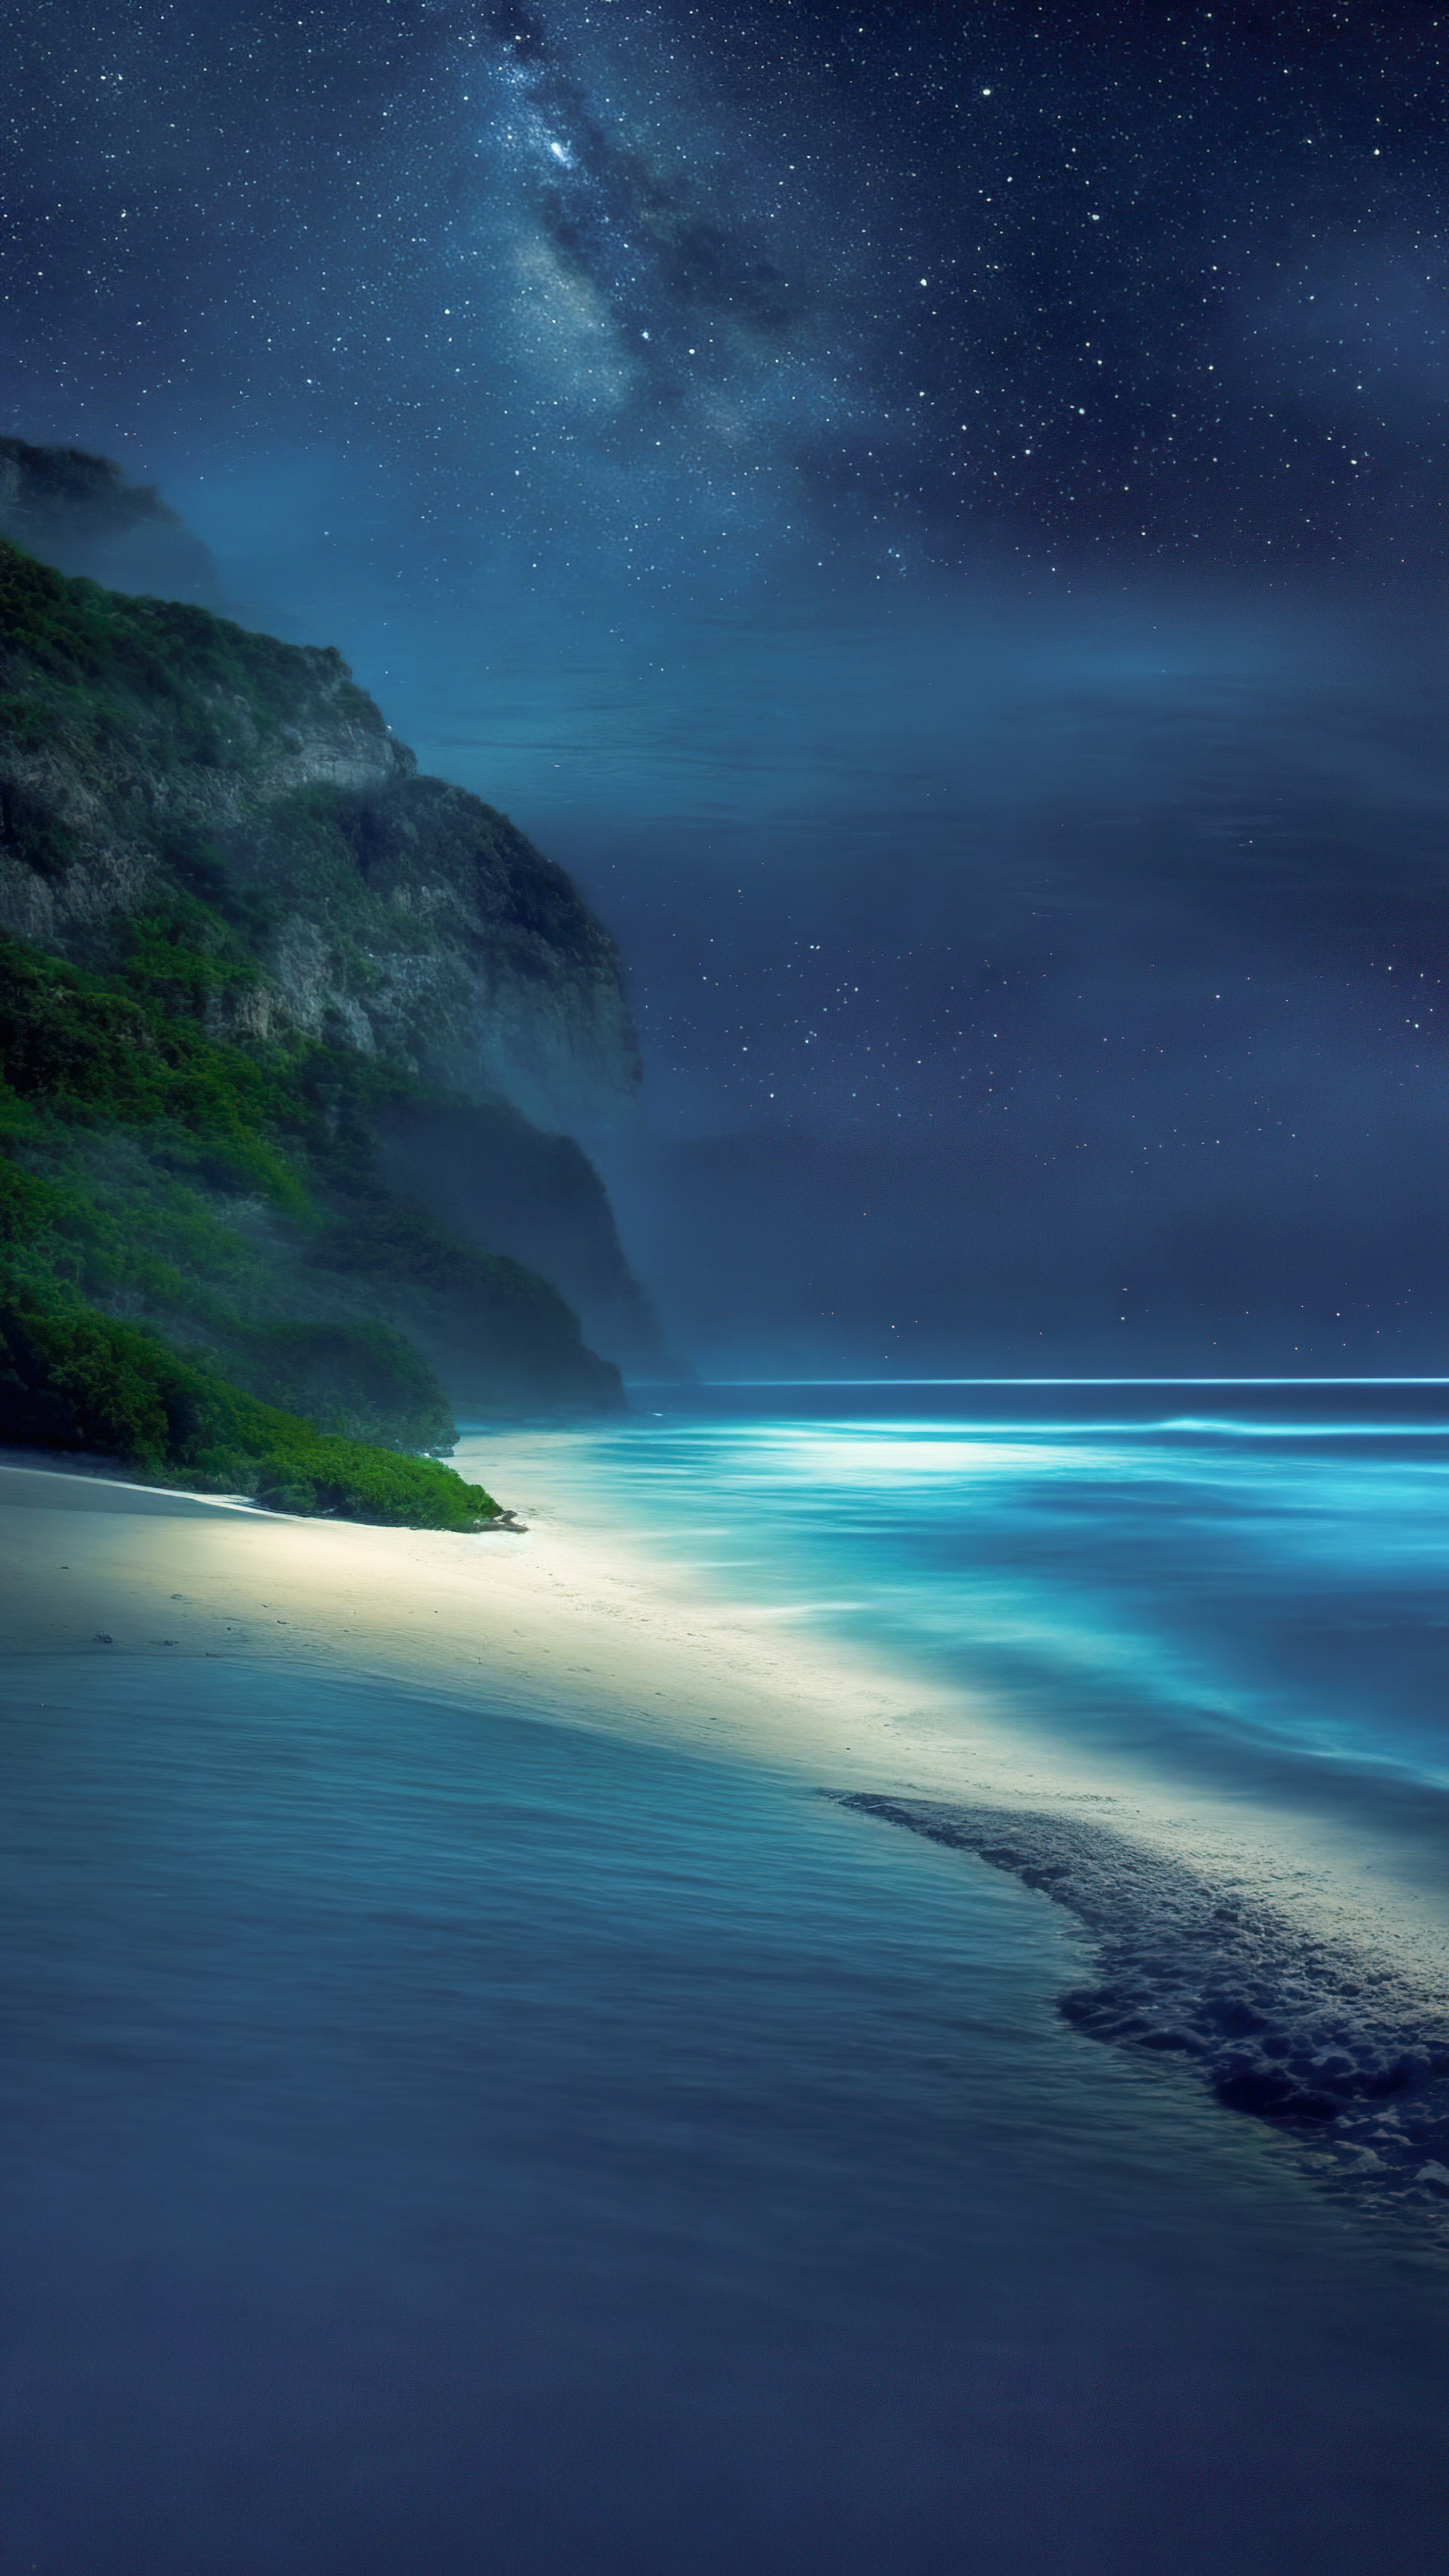 Transformez l'écran de votre appareil avec notre fond d'écran de paysage de plage, dépeignant une plage paisible la nuit, avec les vagues qui caressent doucement le rivage sous un ciel étoilé.